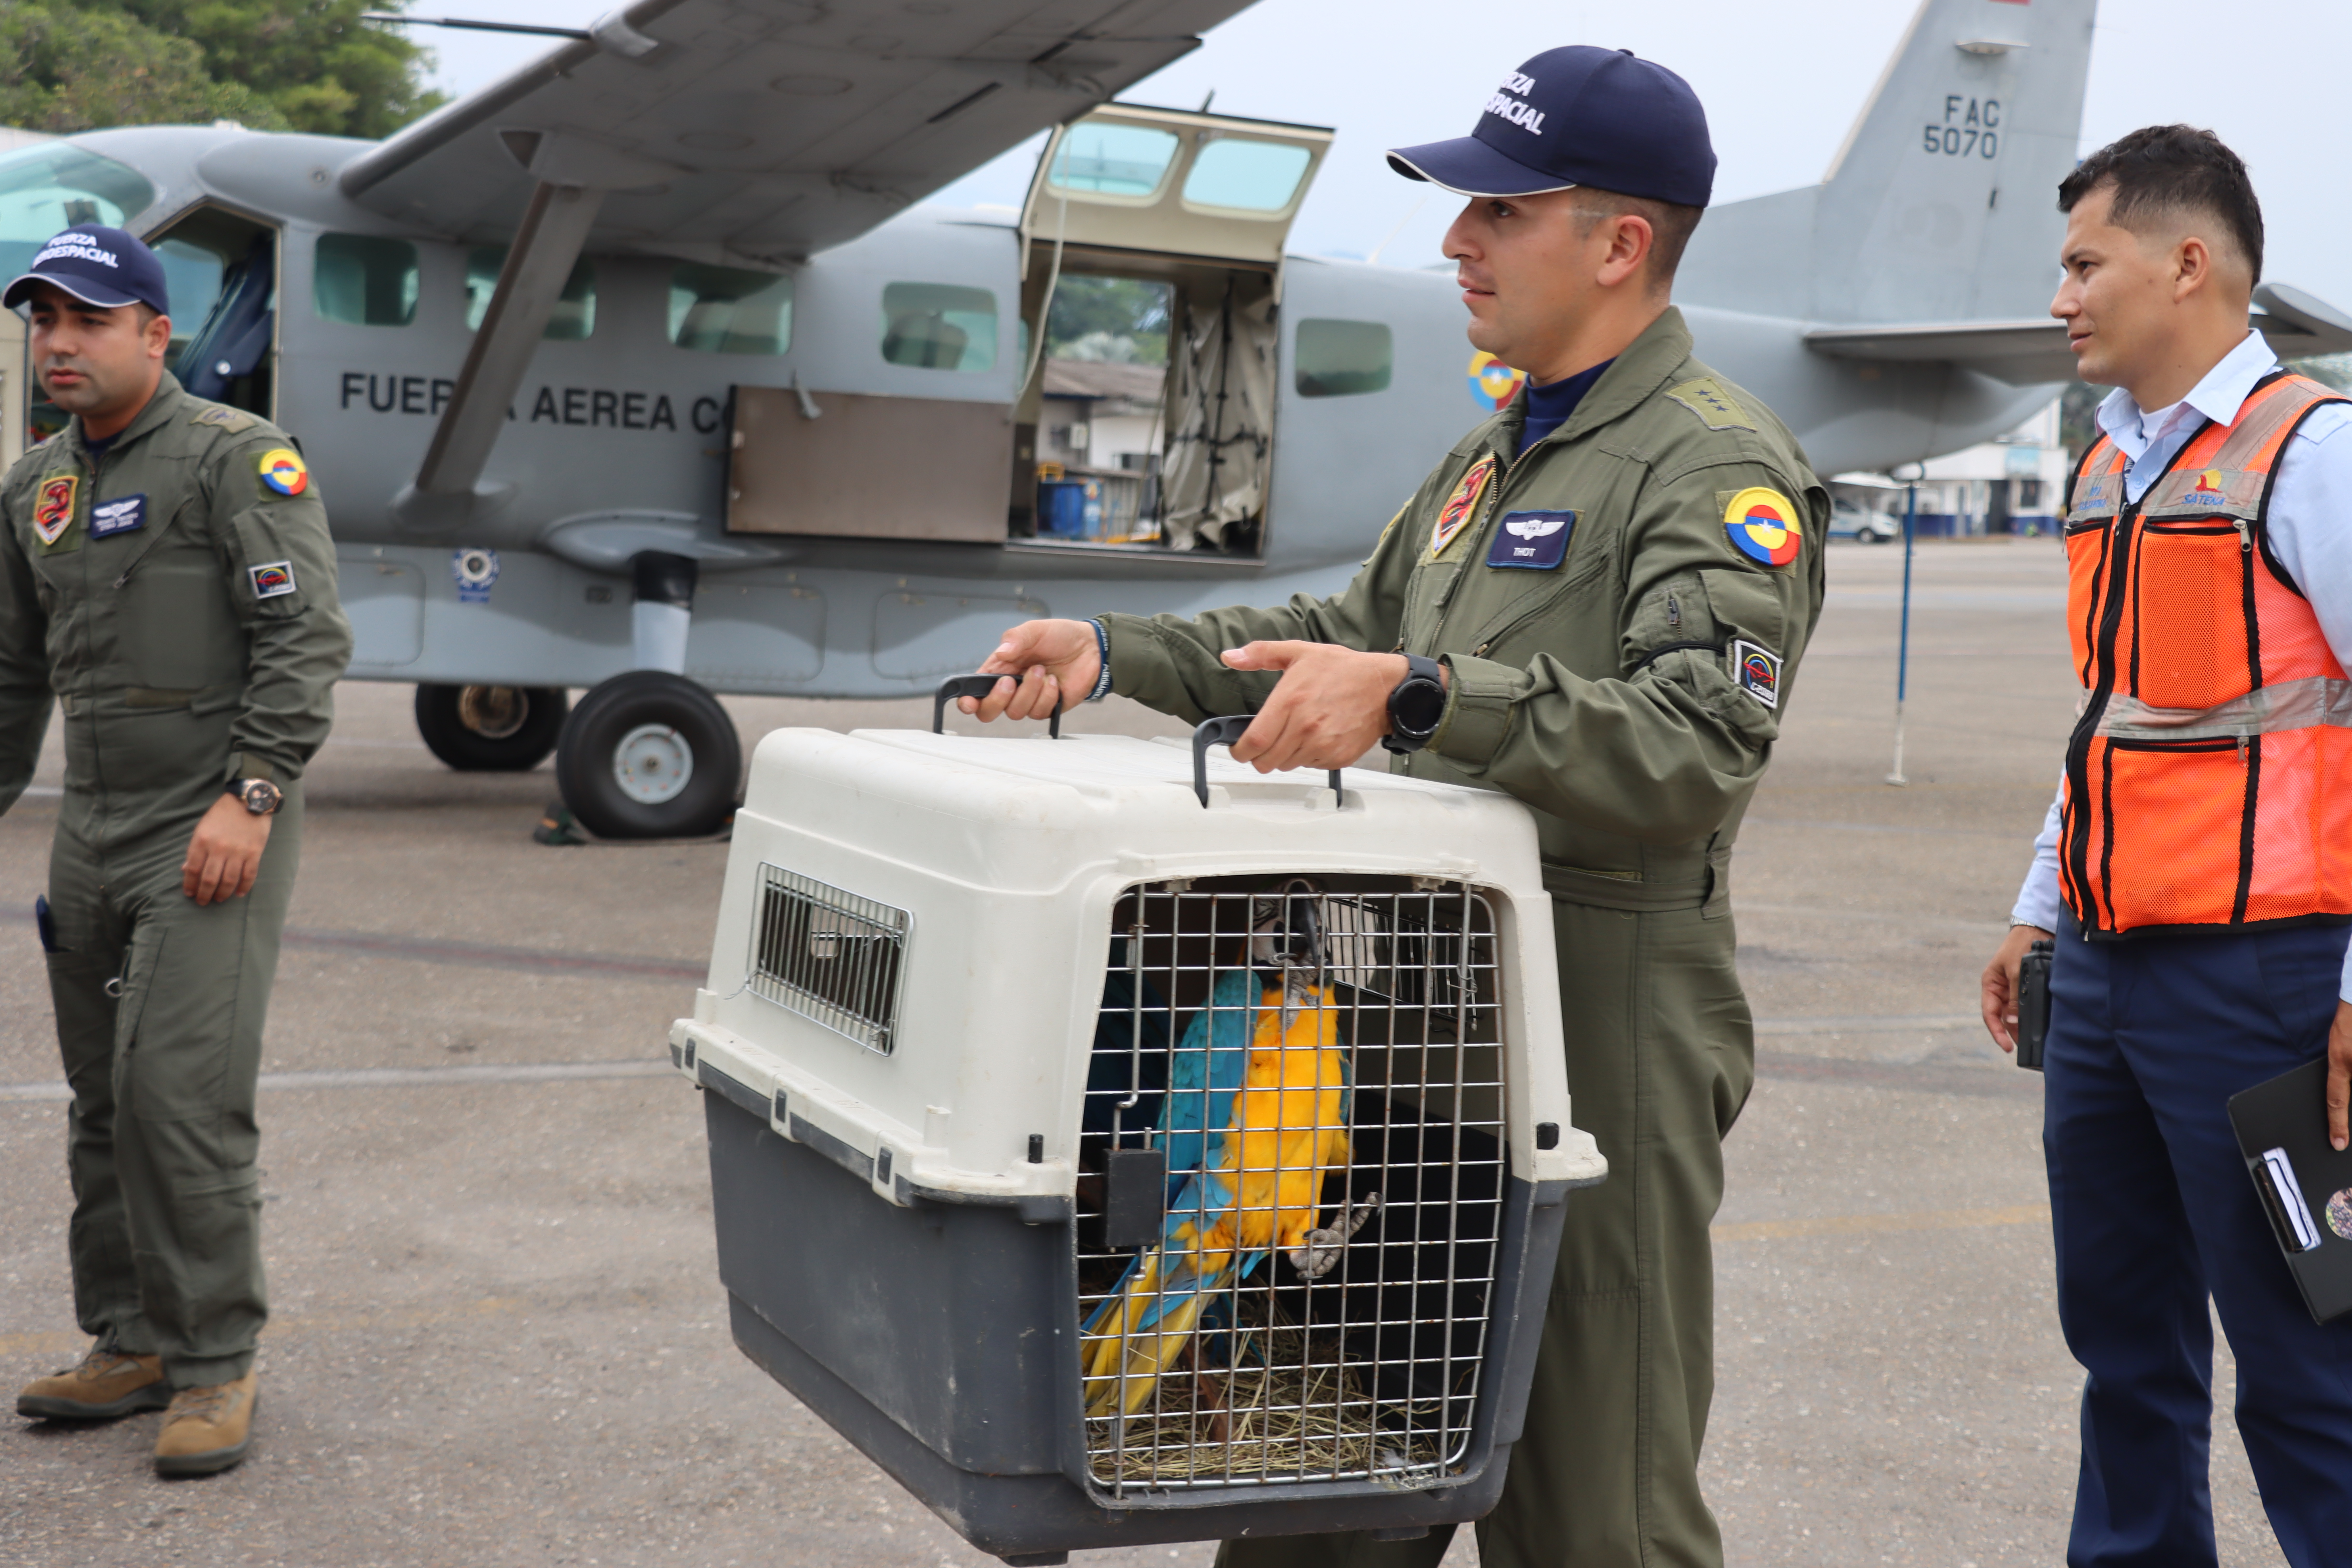  Aves víctimas de tráfico ilegal, fueron transportadas a un nuevo hogar por su Fuerza Aeroespacial Colombiana